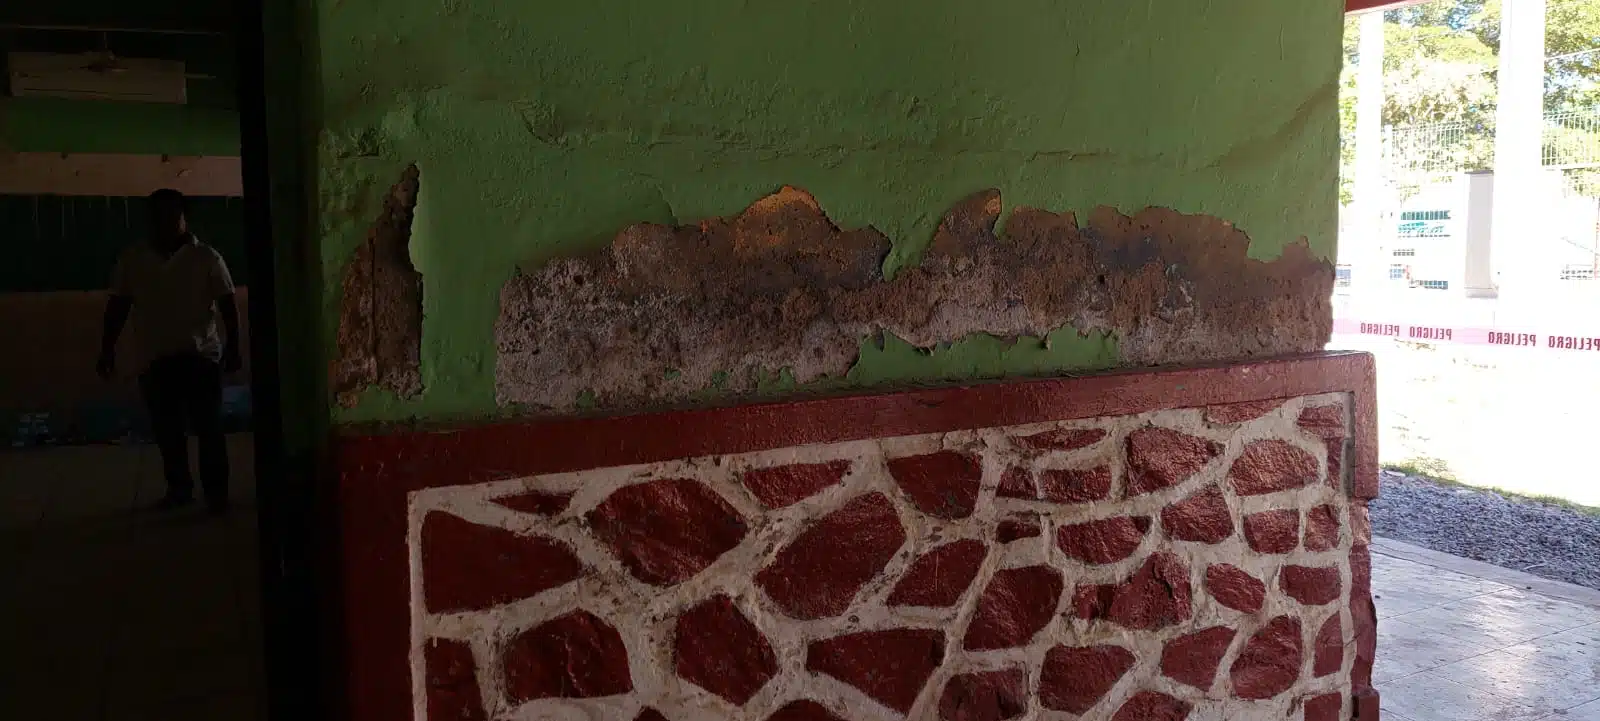 Deterioradas condiciones en las que se encuentra la escuela primaria “Héroes de Chapultepec”